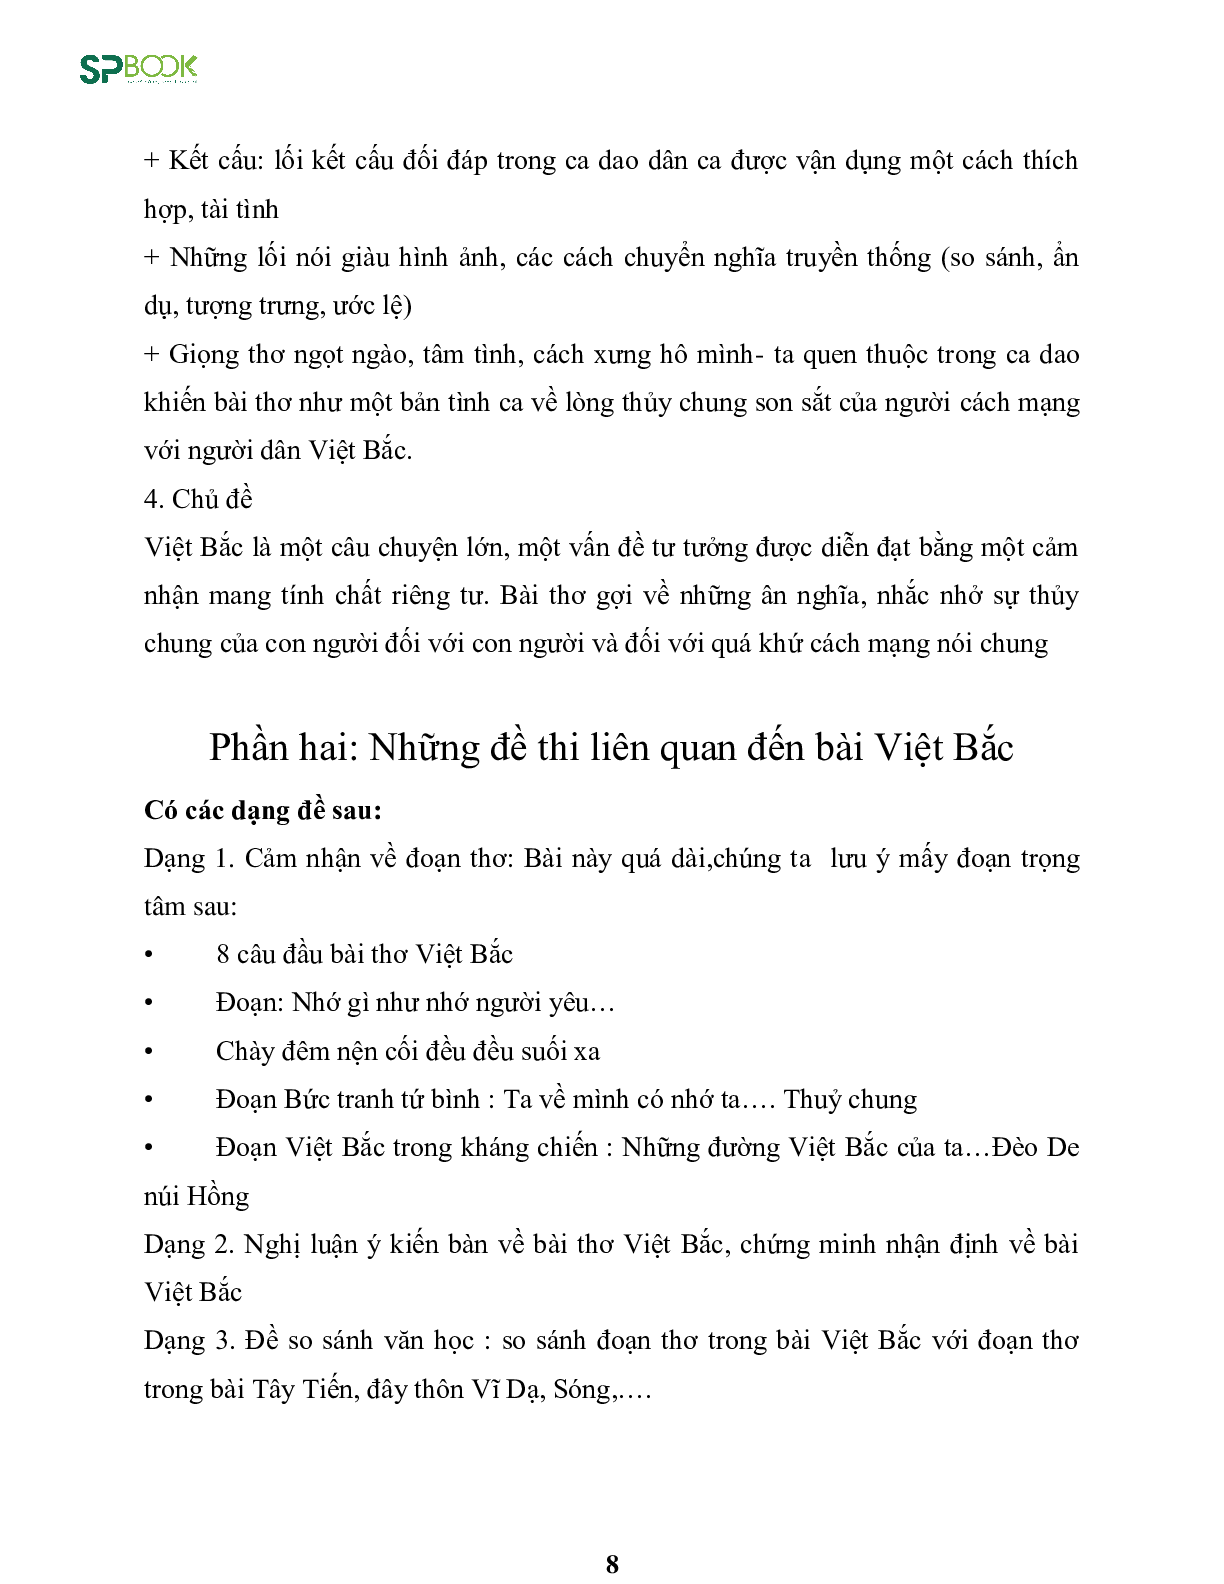 Kiến thức cơ bản và những dạng đề thi về bài Việt Bắc - Tố Hữu Văn 12 (trang 8)